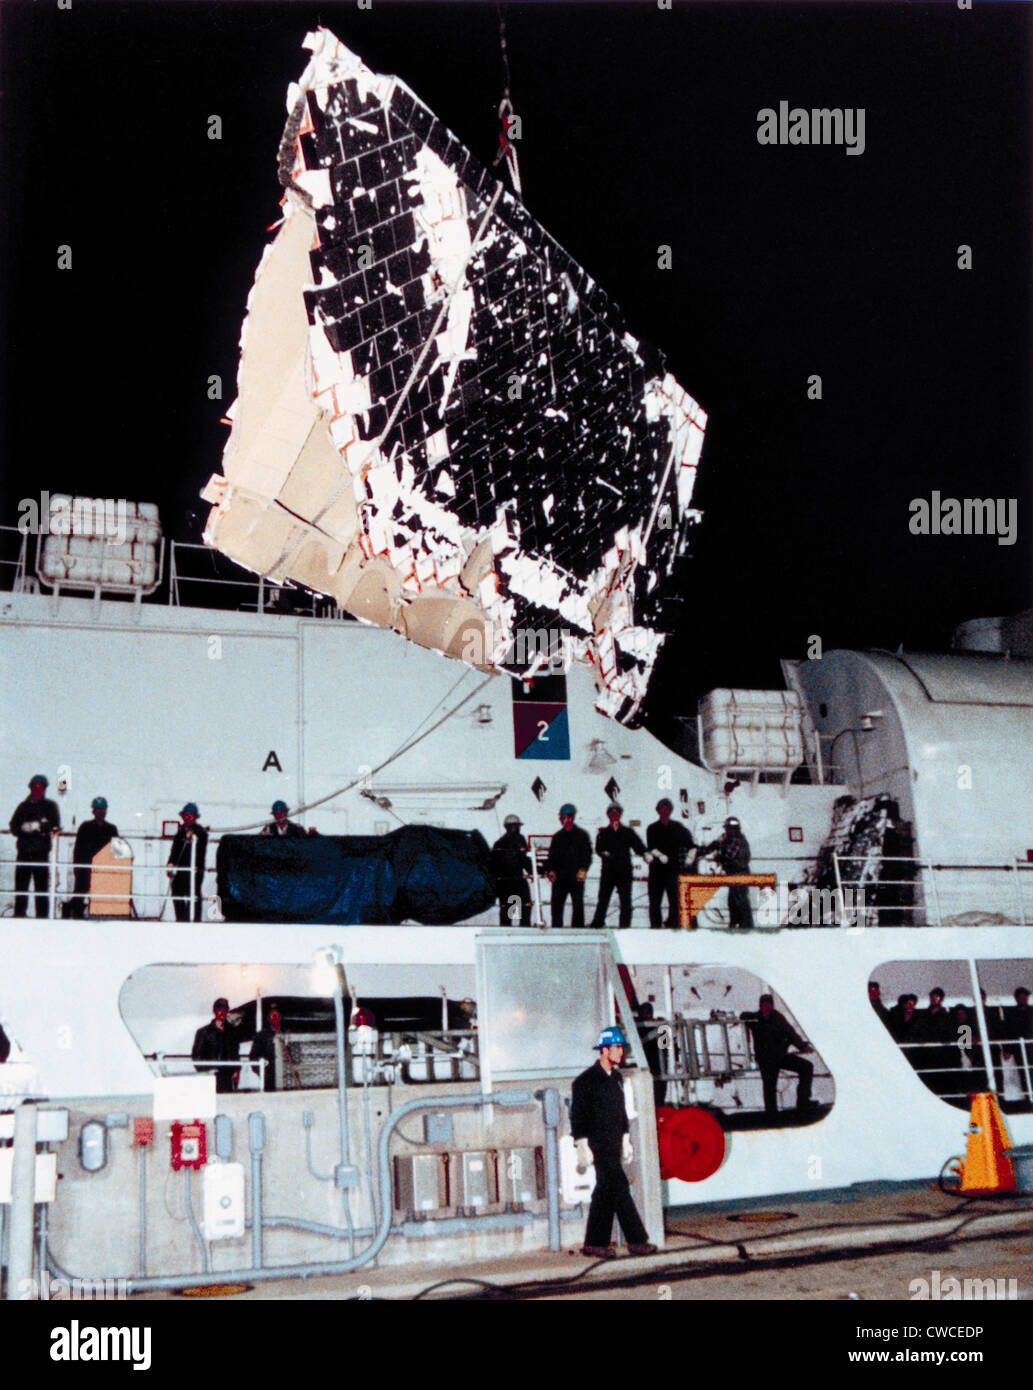 La catastrophe de la navette spatiale Challenger. Les équipes de récupération de pièces récupérées le Challenger de l'océan Atlantique. 30 janvier 1986. Banque D'Images